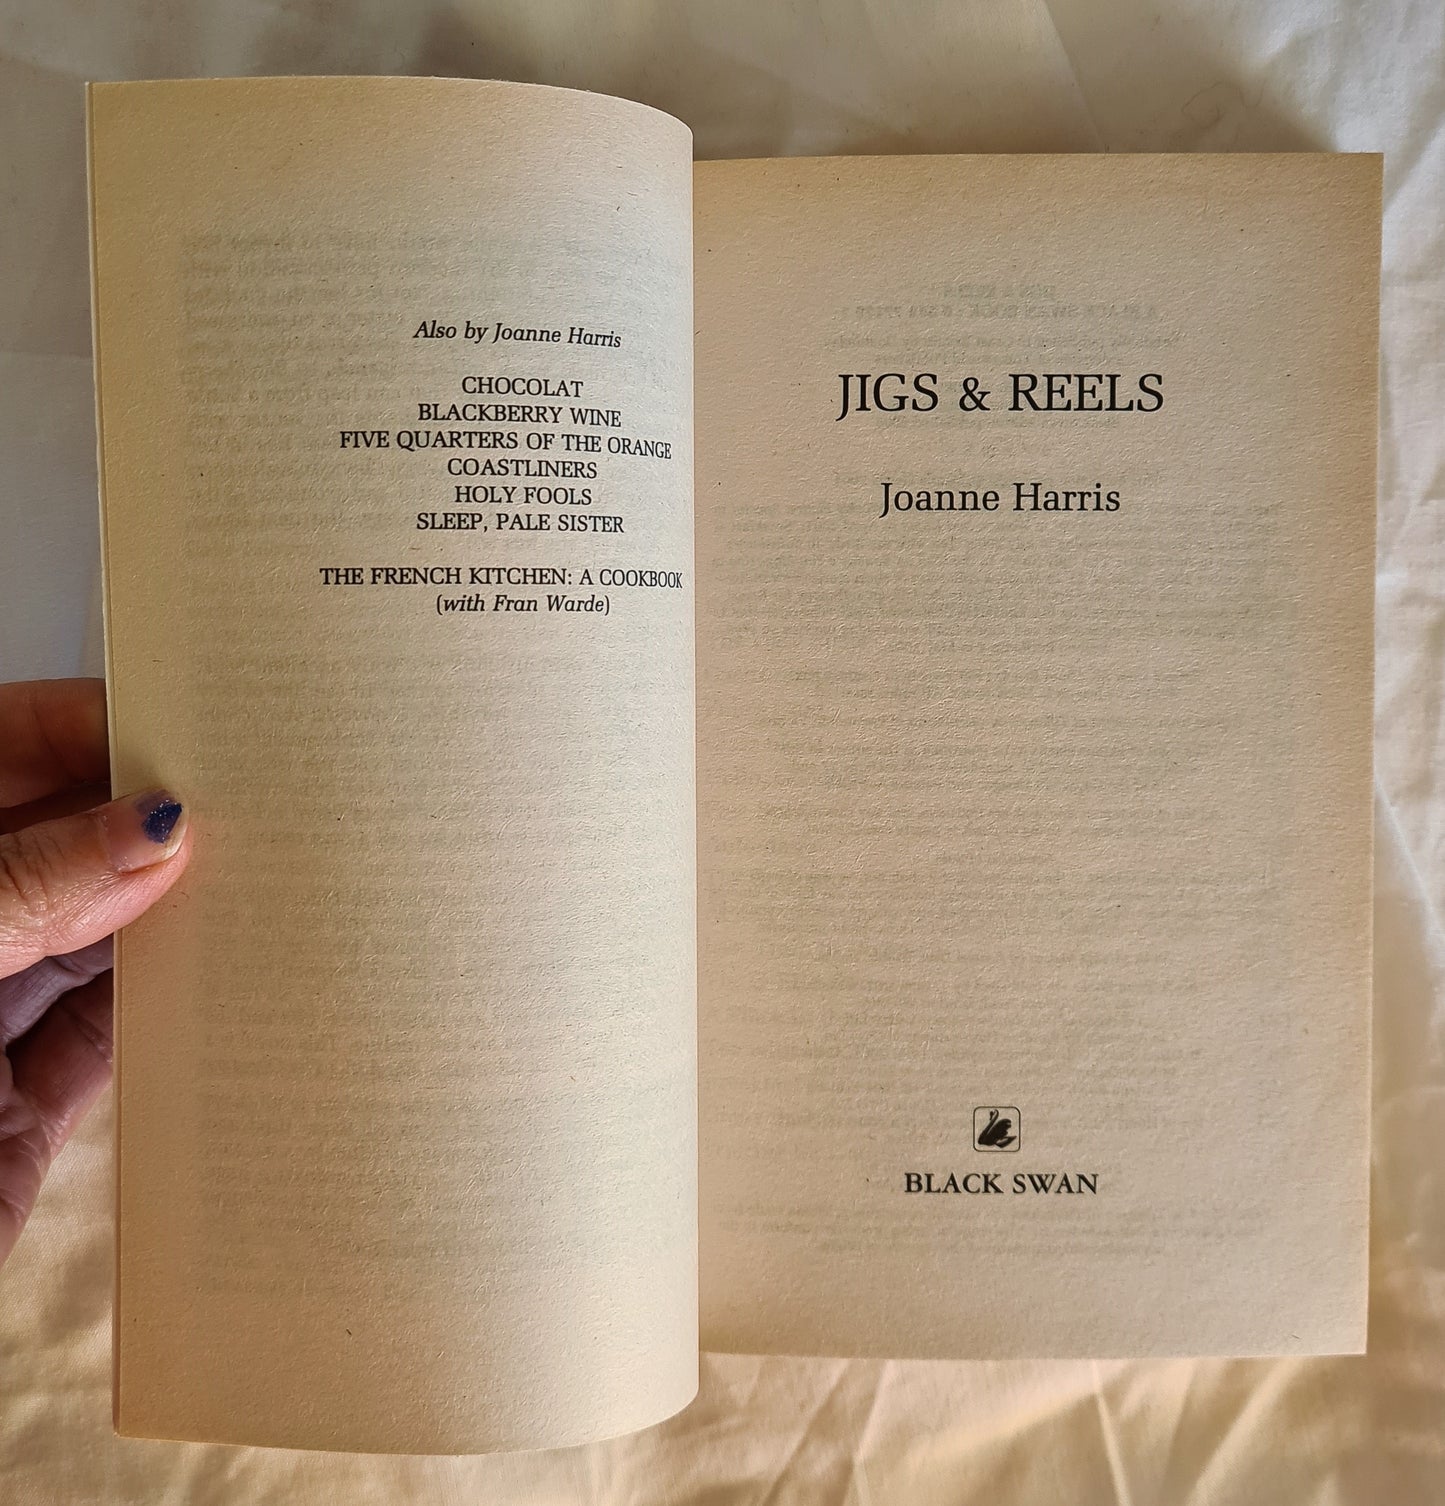 Jigs & Reels by Joanne Harris